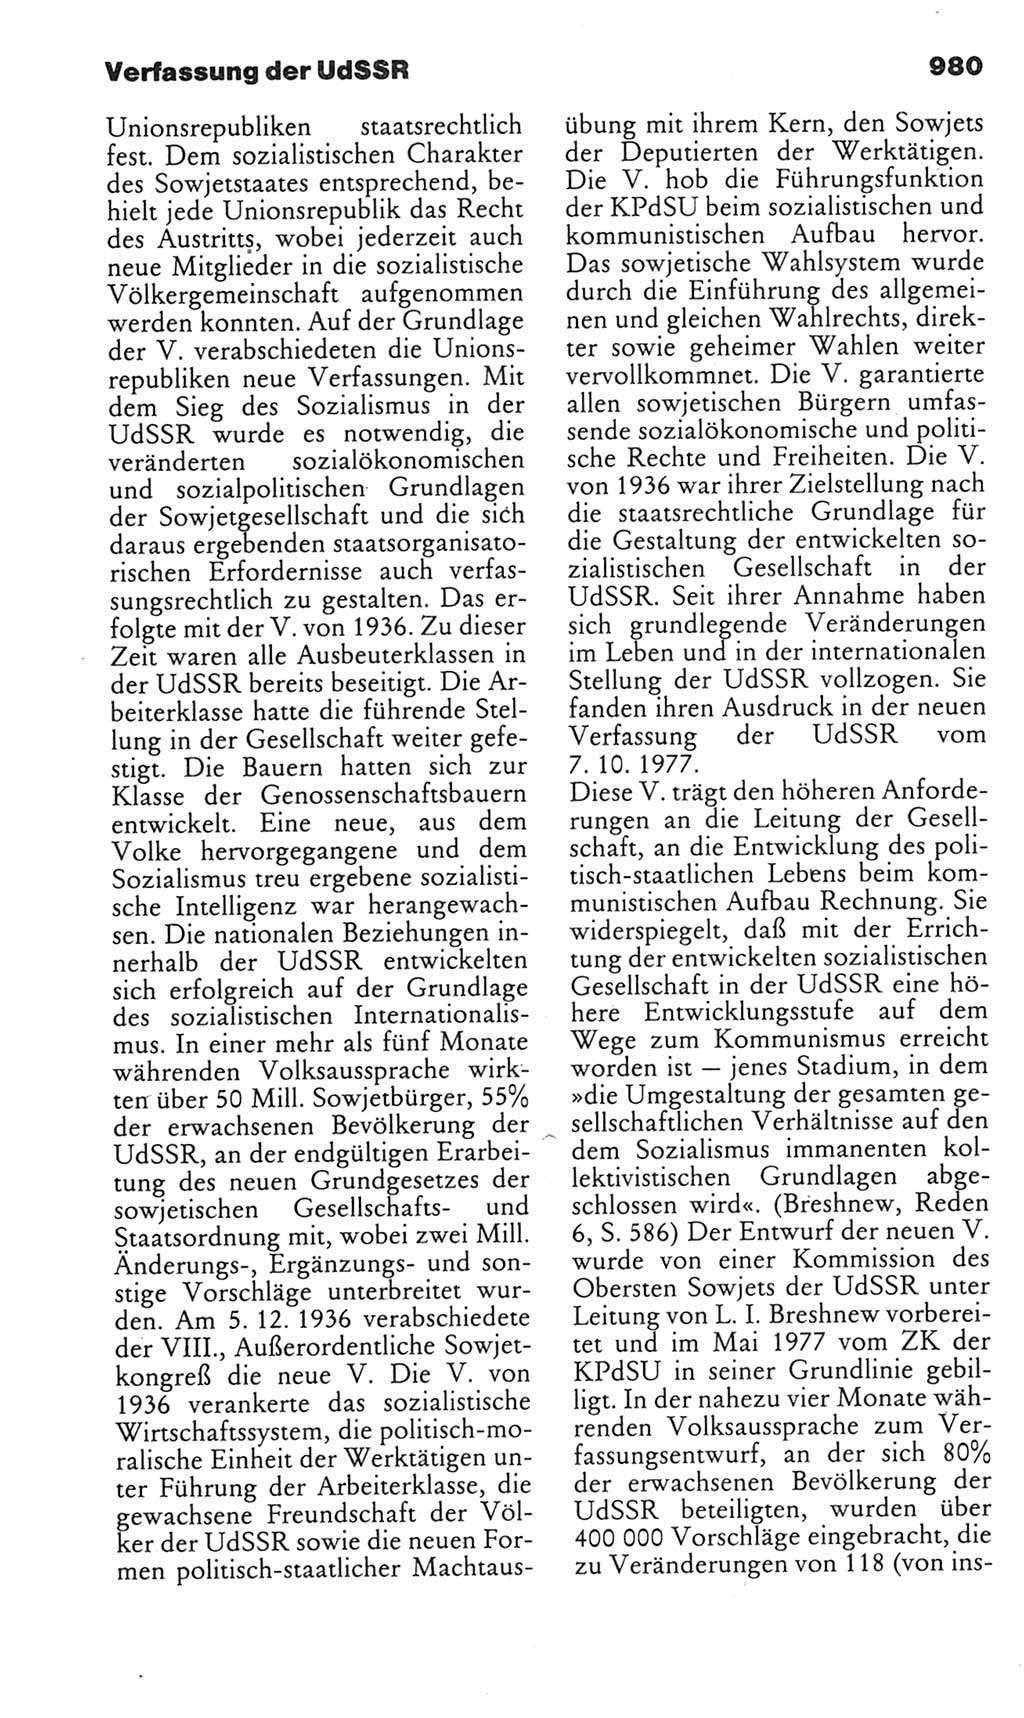 Kleines politisches Wörterbuch [Deutsche Demokratische Republik (DDR)] 1985, Seite 980 (Kl. pol. Wb. DDR 1985, S. 980)